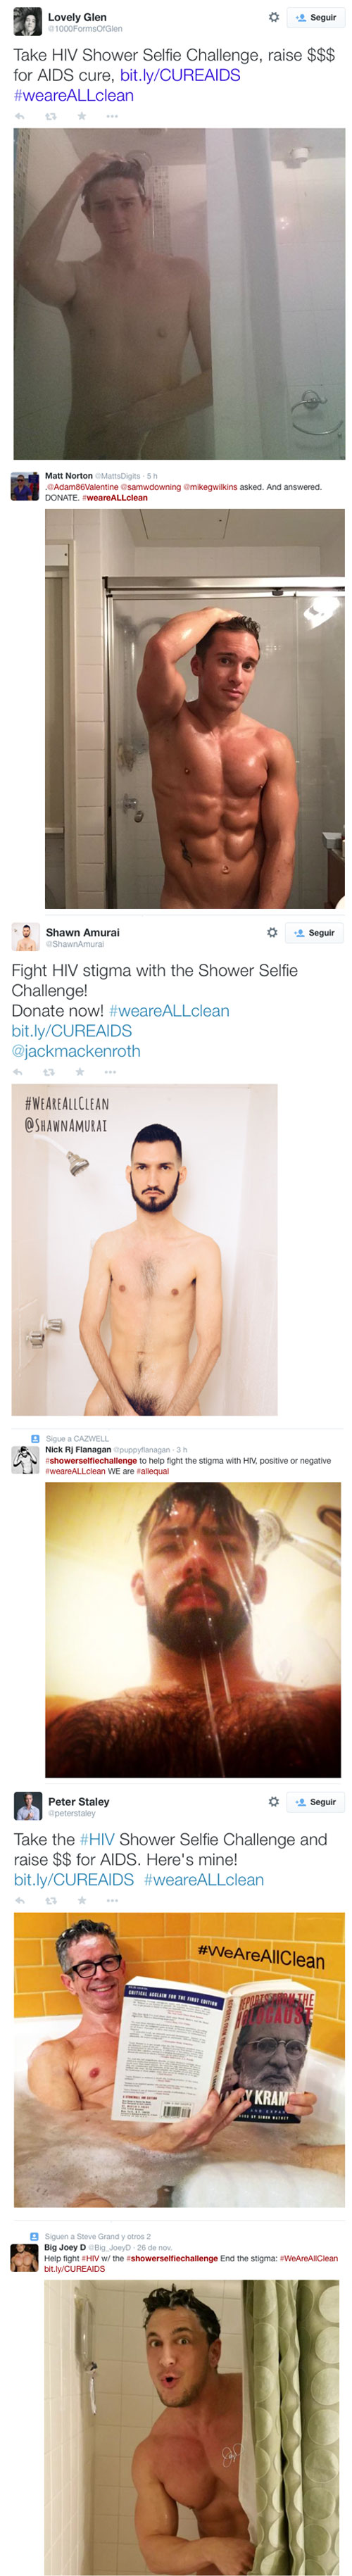 Los mejores desnudos en la ducha contra el VIH